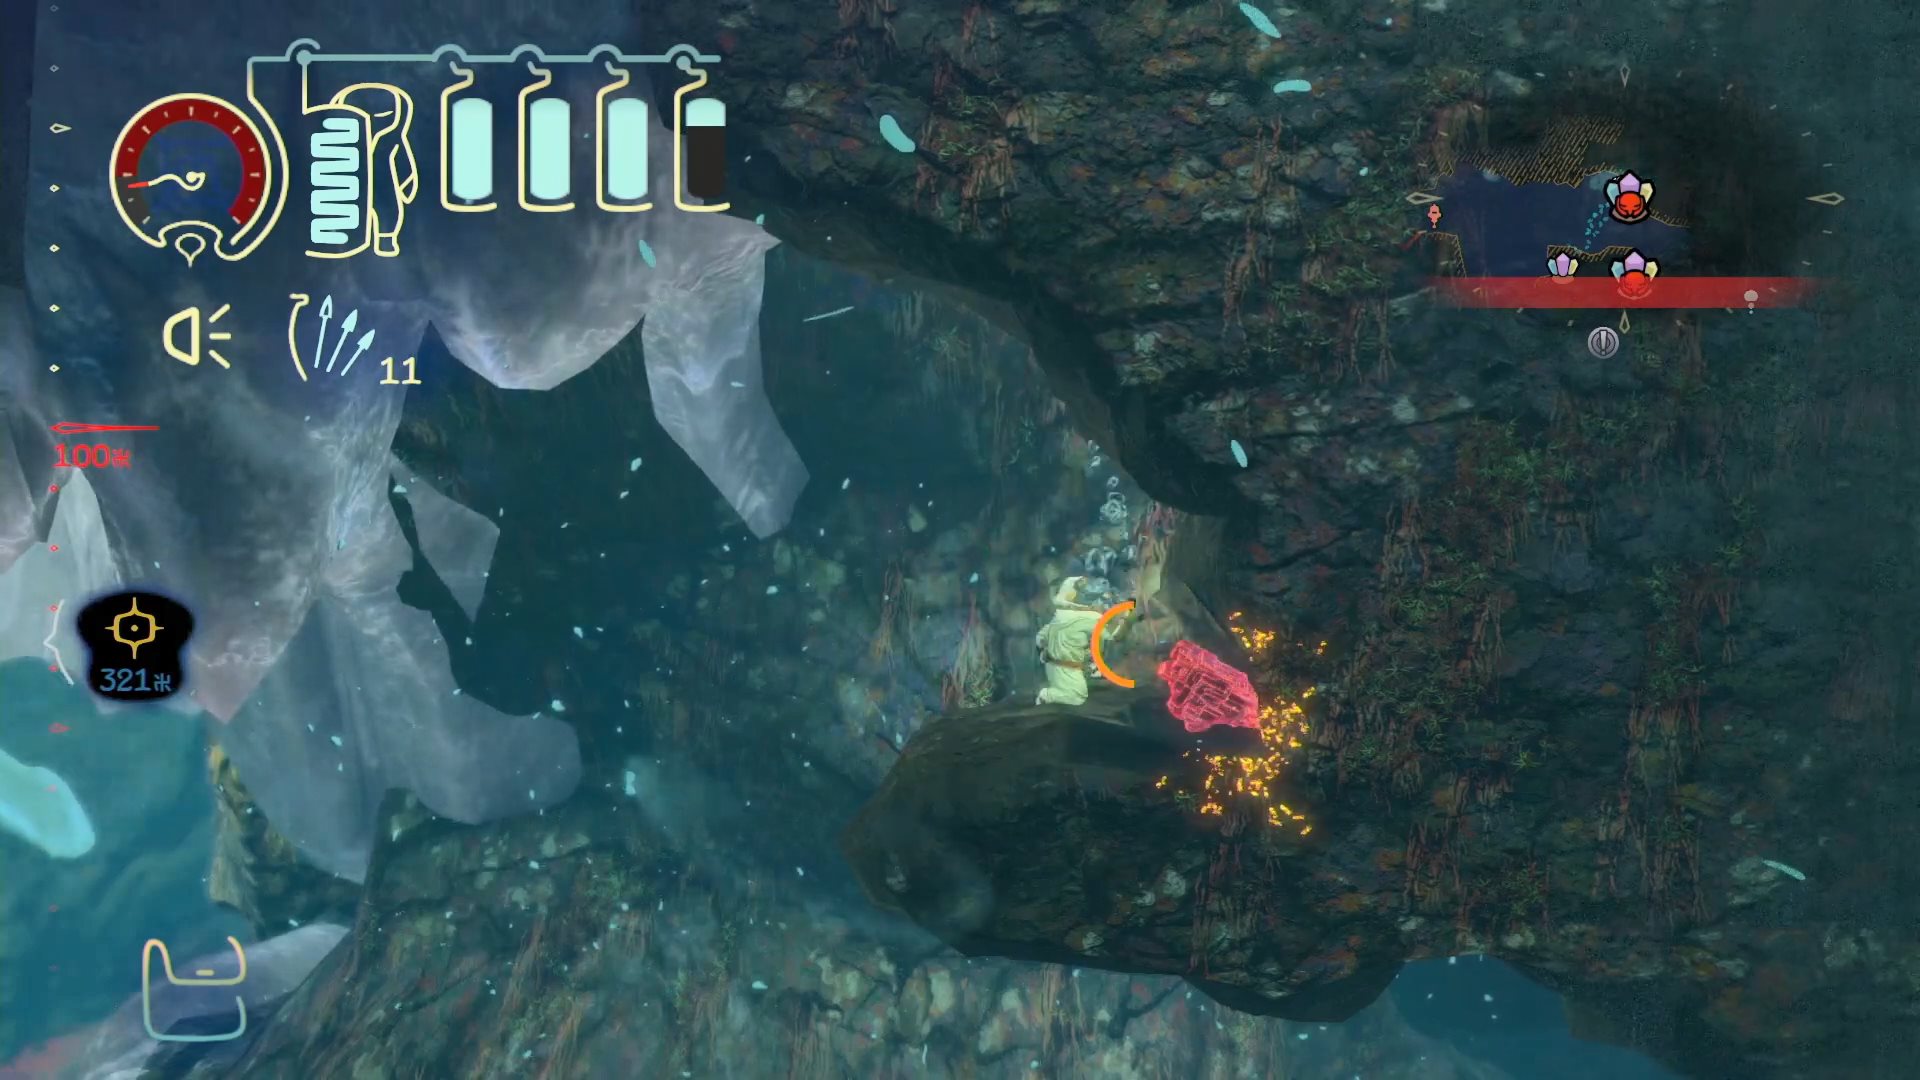 深世海 Shinsekai: Into the Depths 一款深入世界海底为主的冒险游戏